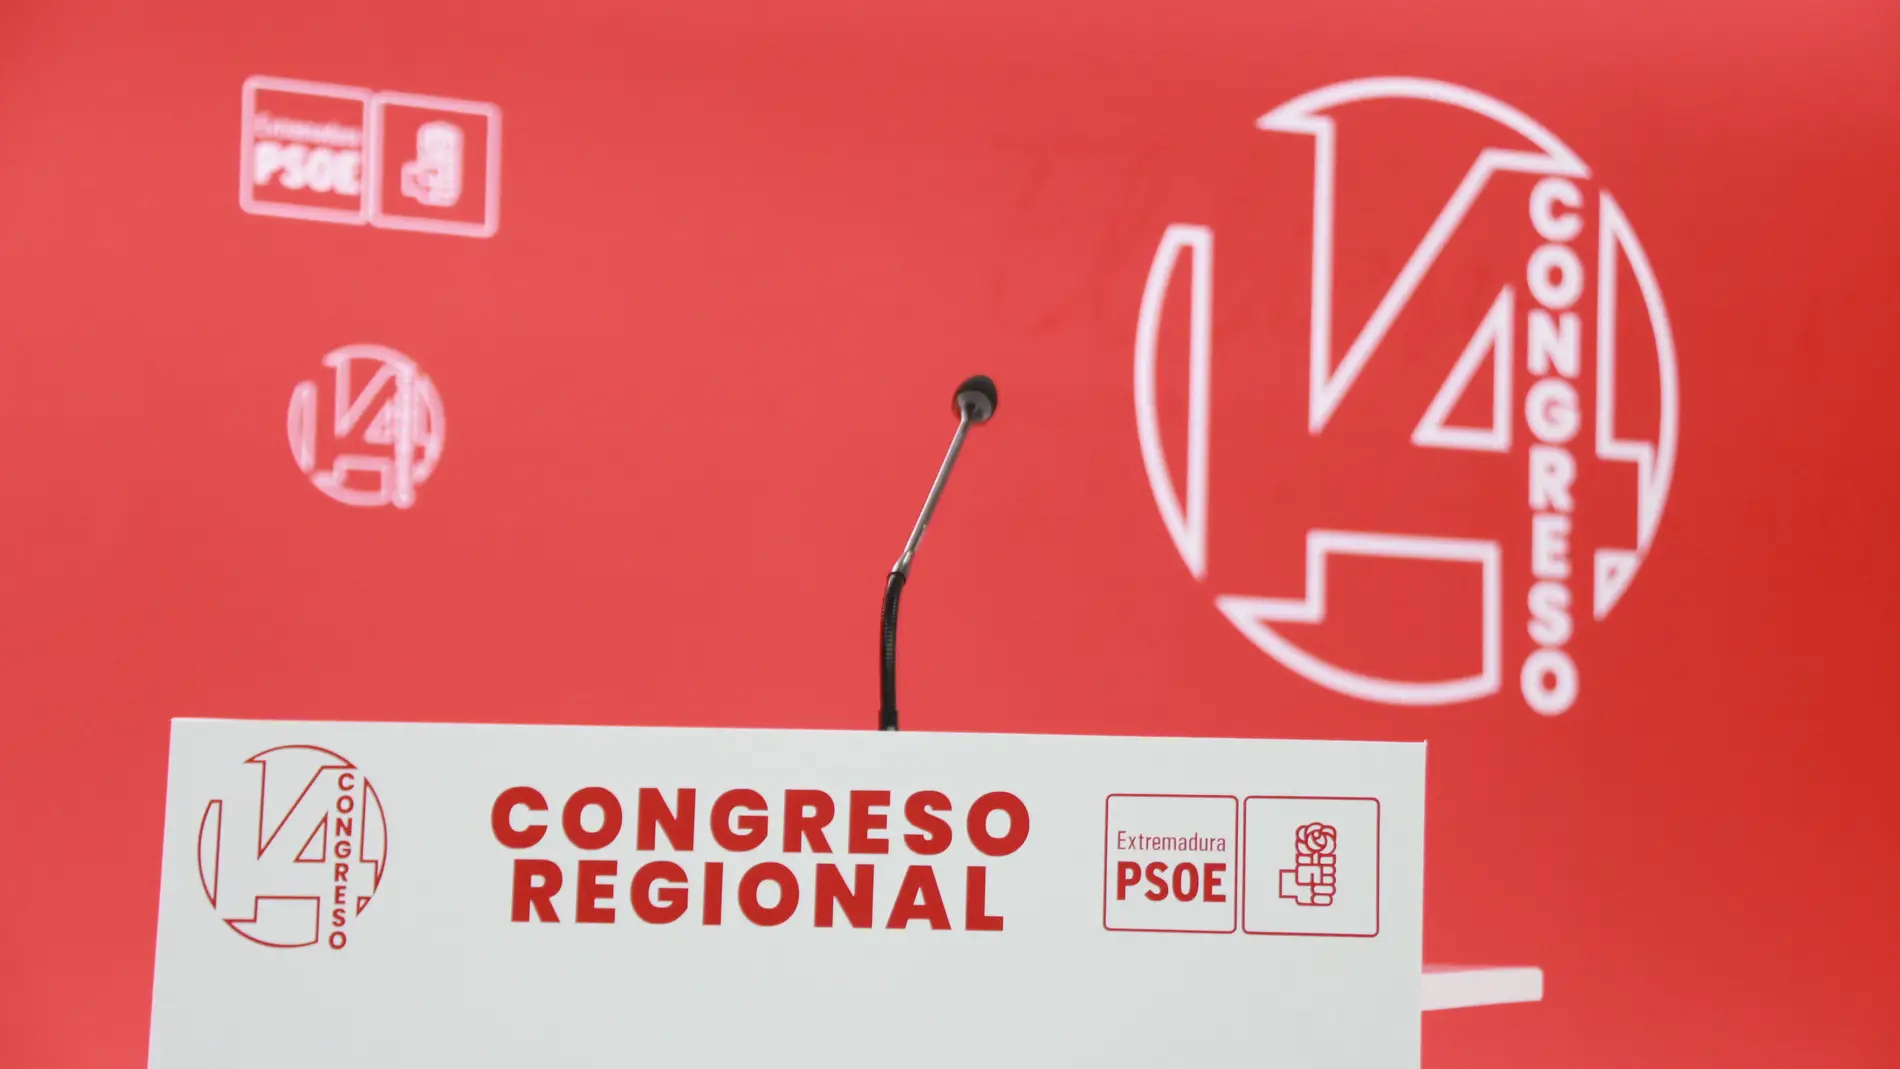 Gallardo y Garlito serán los candidatos en las primarias del PSOE extremeño el 2 de marzo, Vergeles no reunió los avales mínimos